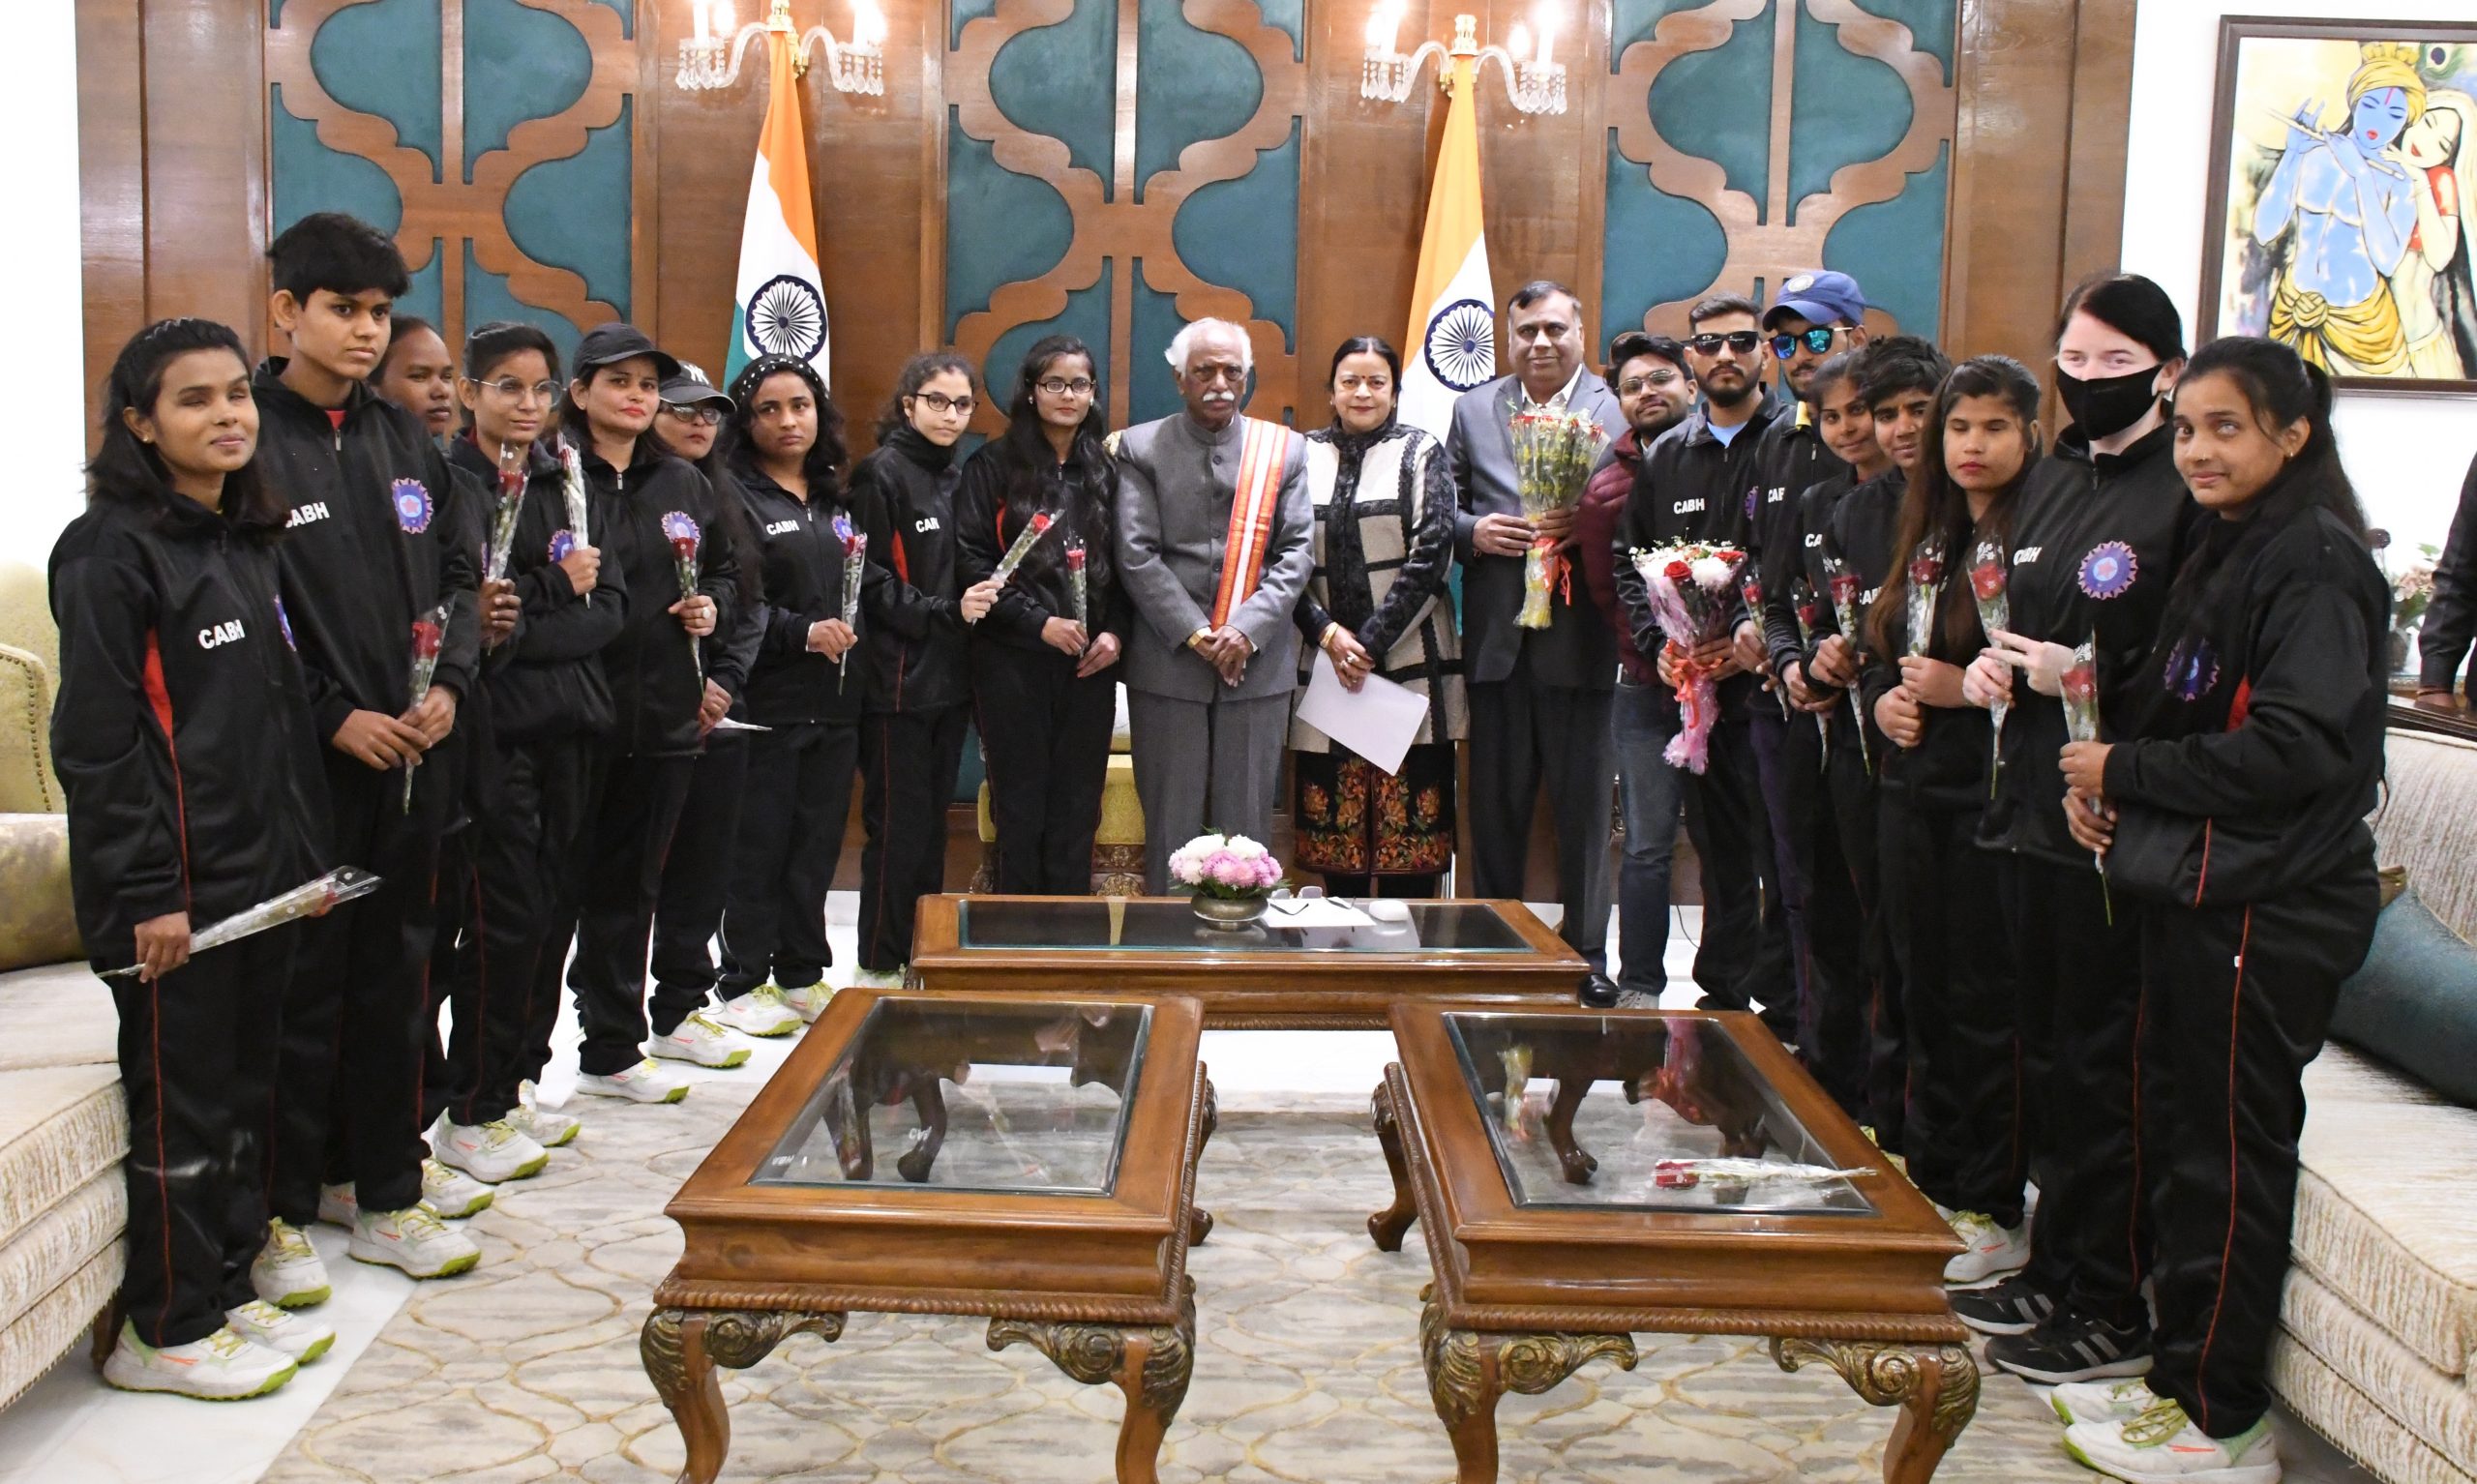 राज्यपाल श्री बंडारू दत्तात्रेय राजभवन में क्रिकेट ऐसोसिएशन फार दी बलाईन्ड इन हरियाणा की खिलाड़ियों से साथ चित्र समूह में